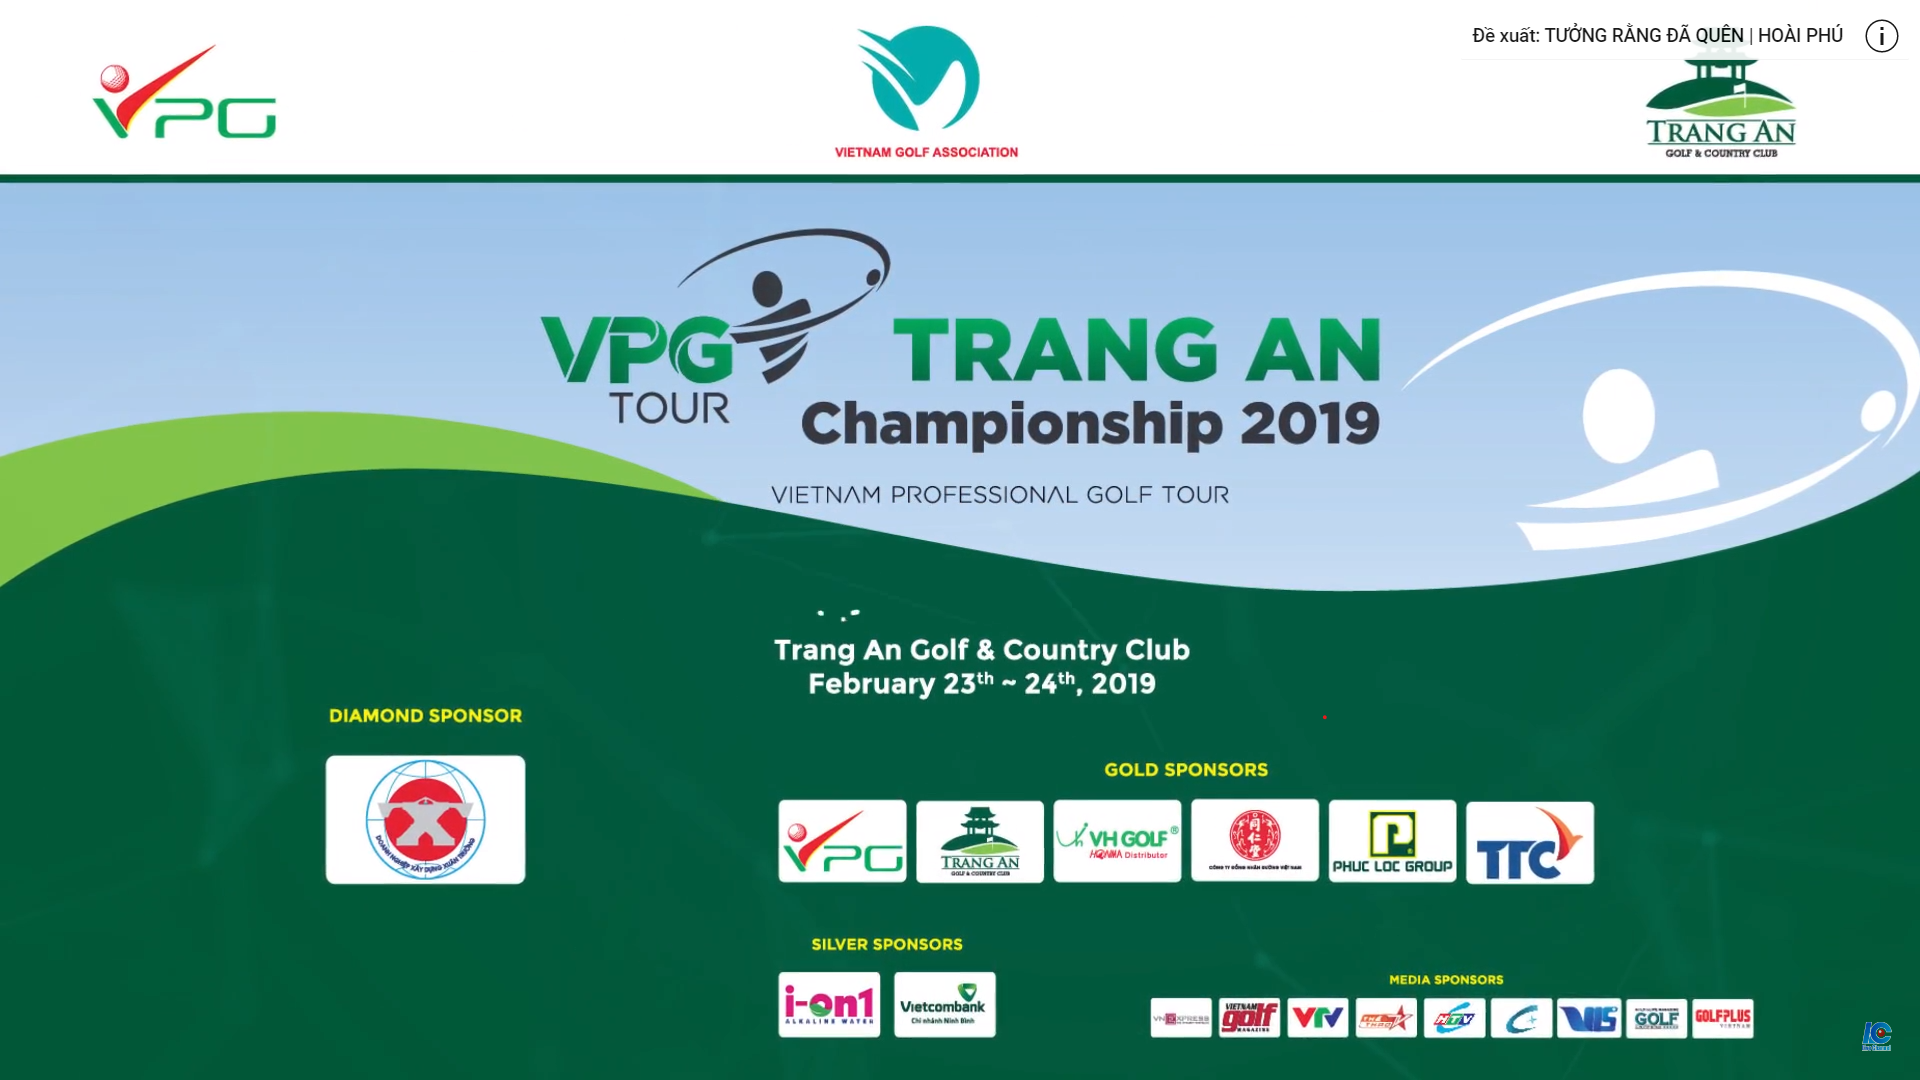 PHÁT TRỰC TIẾP GIẢI GOLF CHUYÊN NGHIỆP VPG TOUR - TRANG AN CHAMPIONSHIP 2019